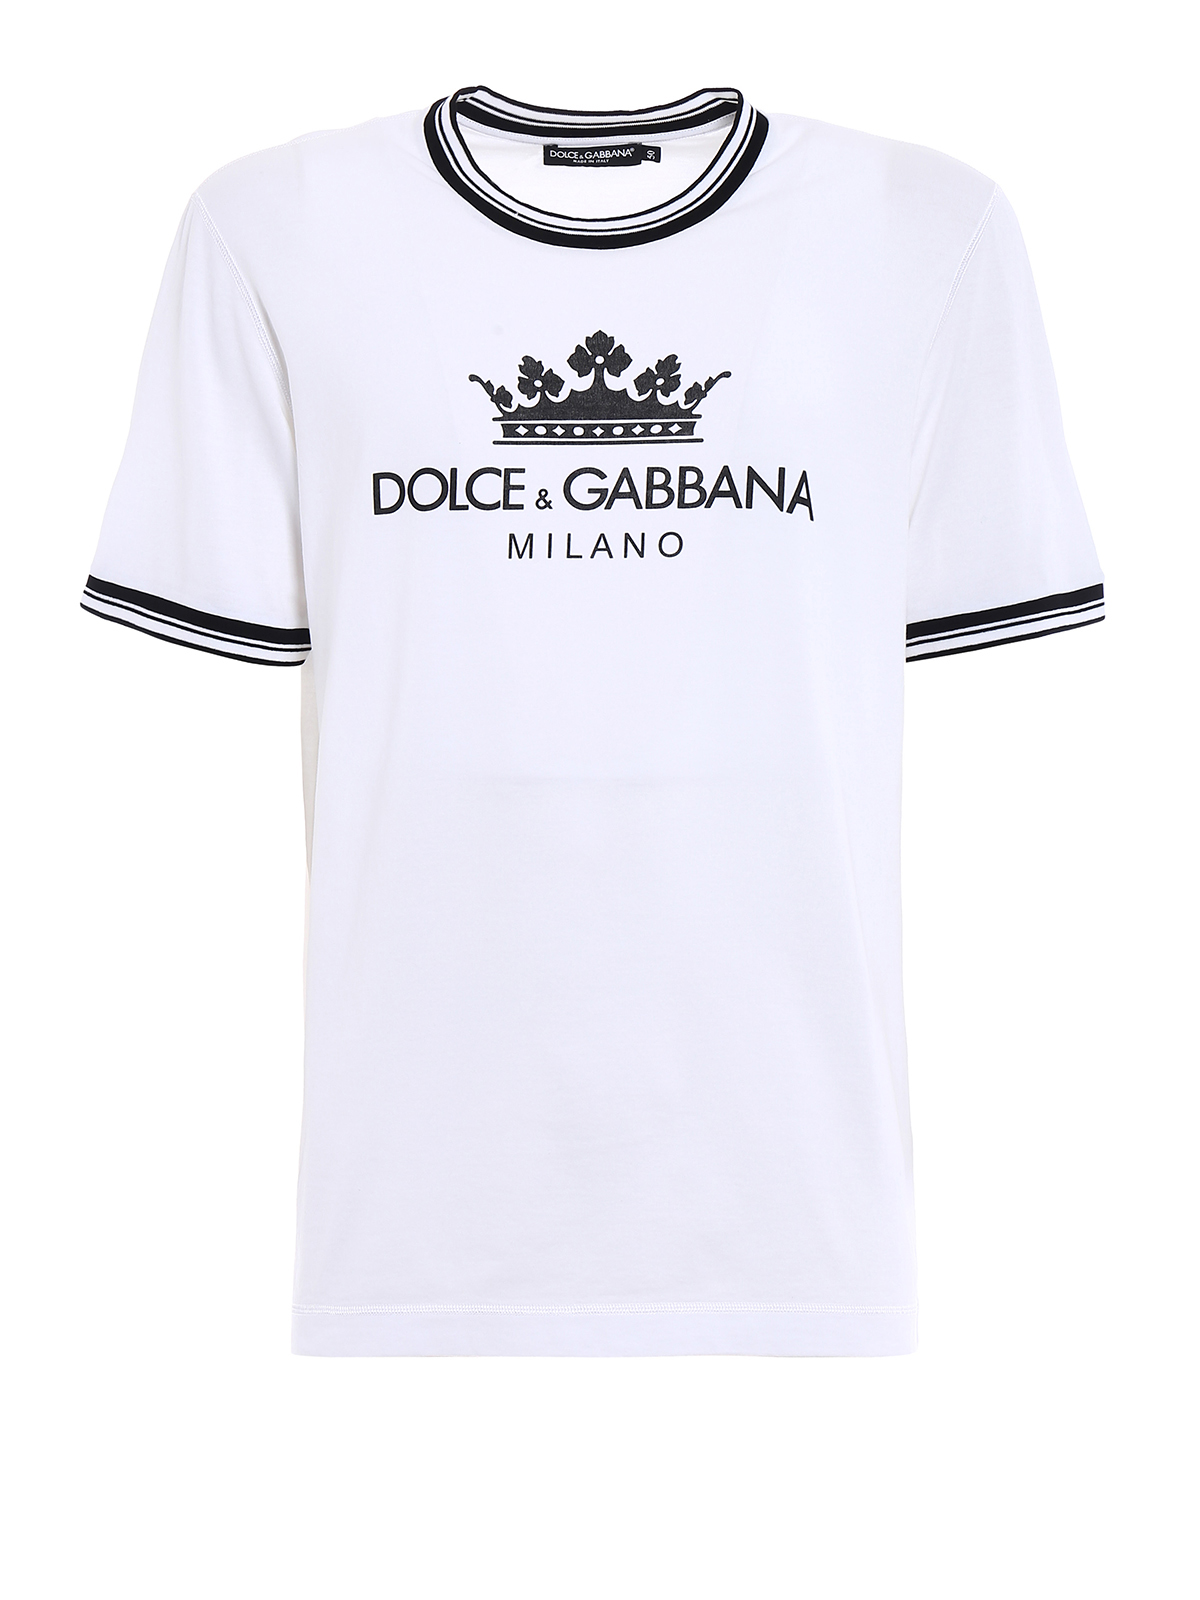 dolce gabbana crown shirt